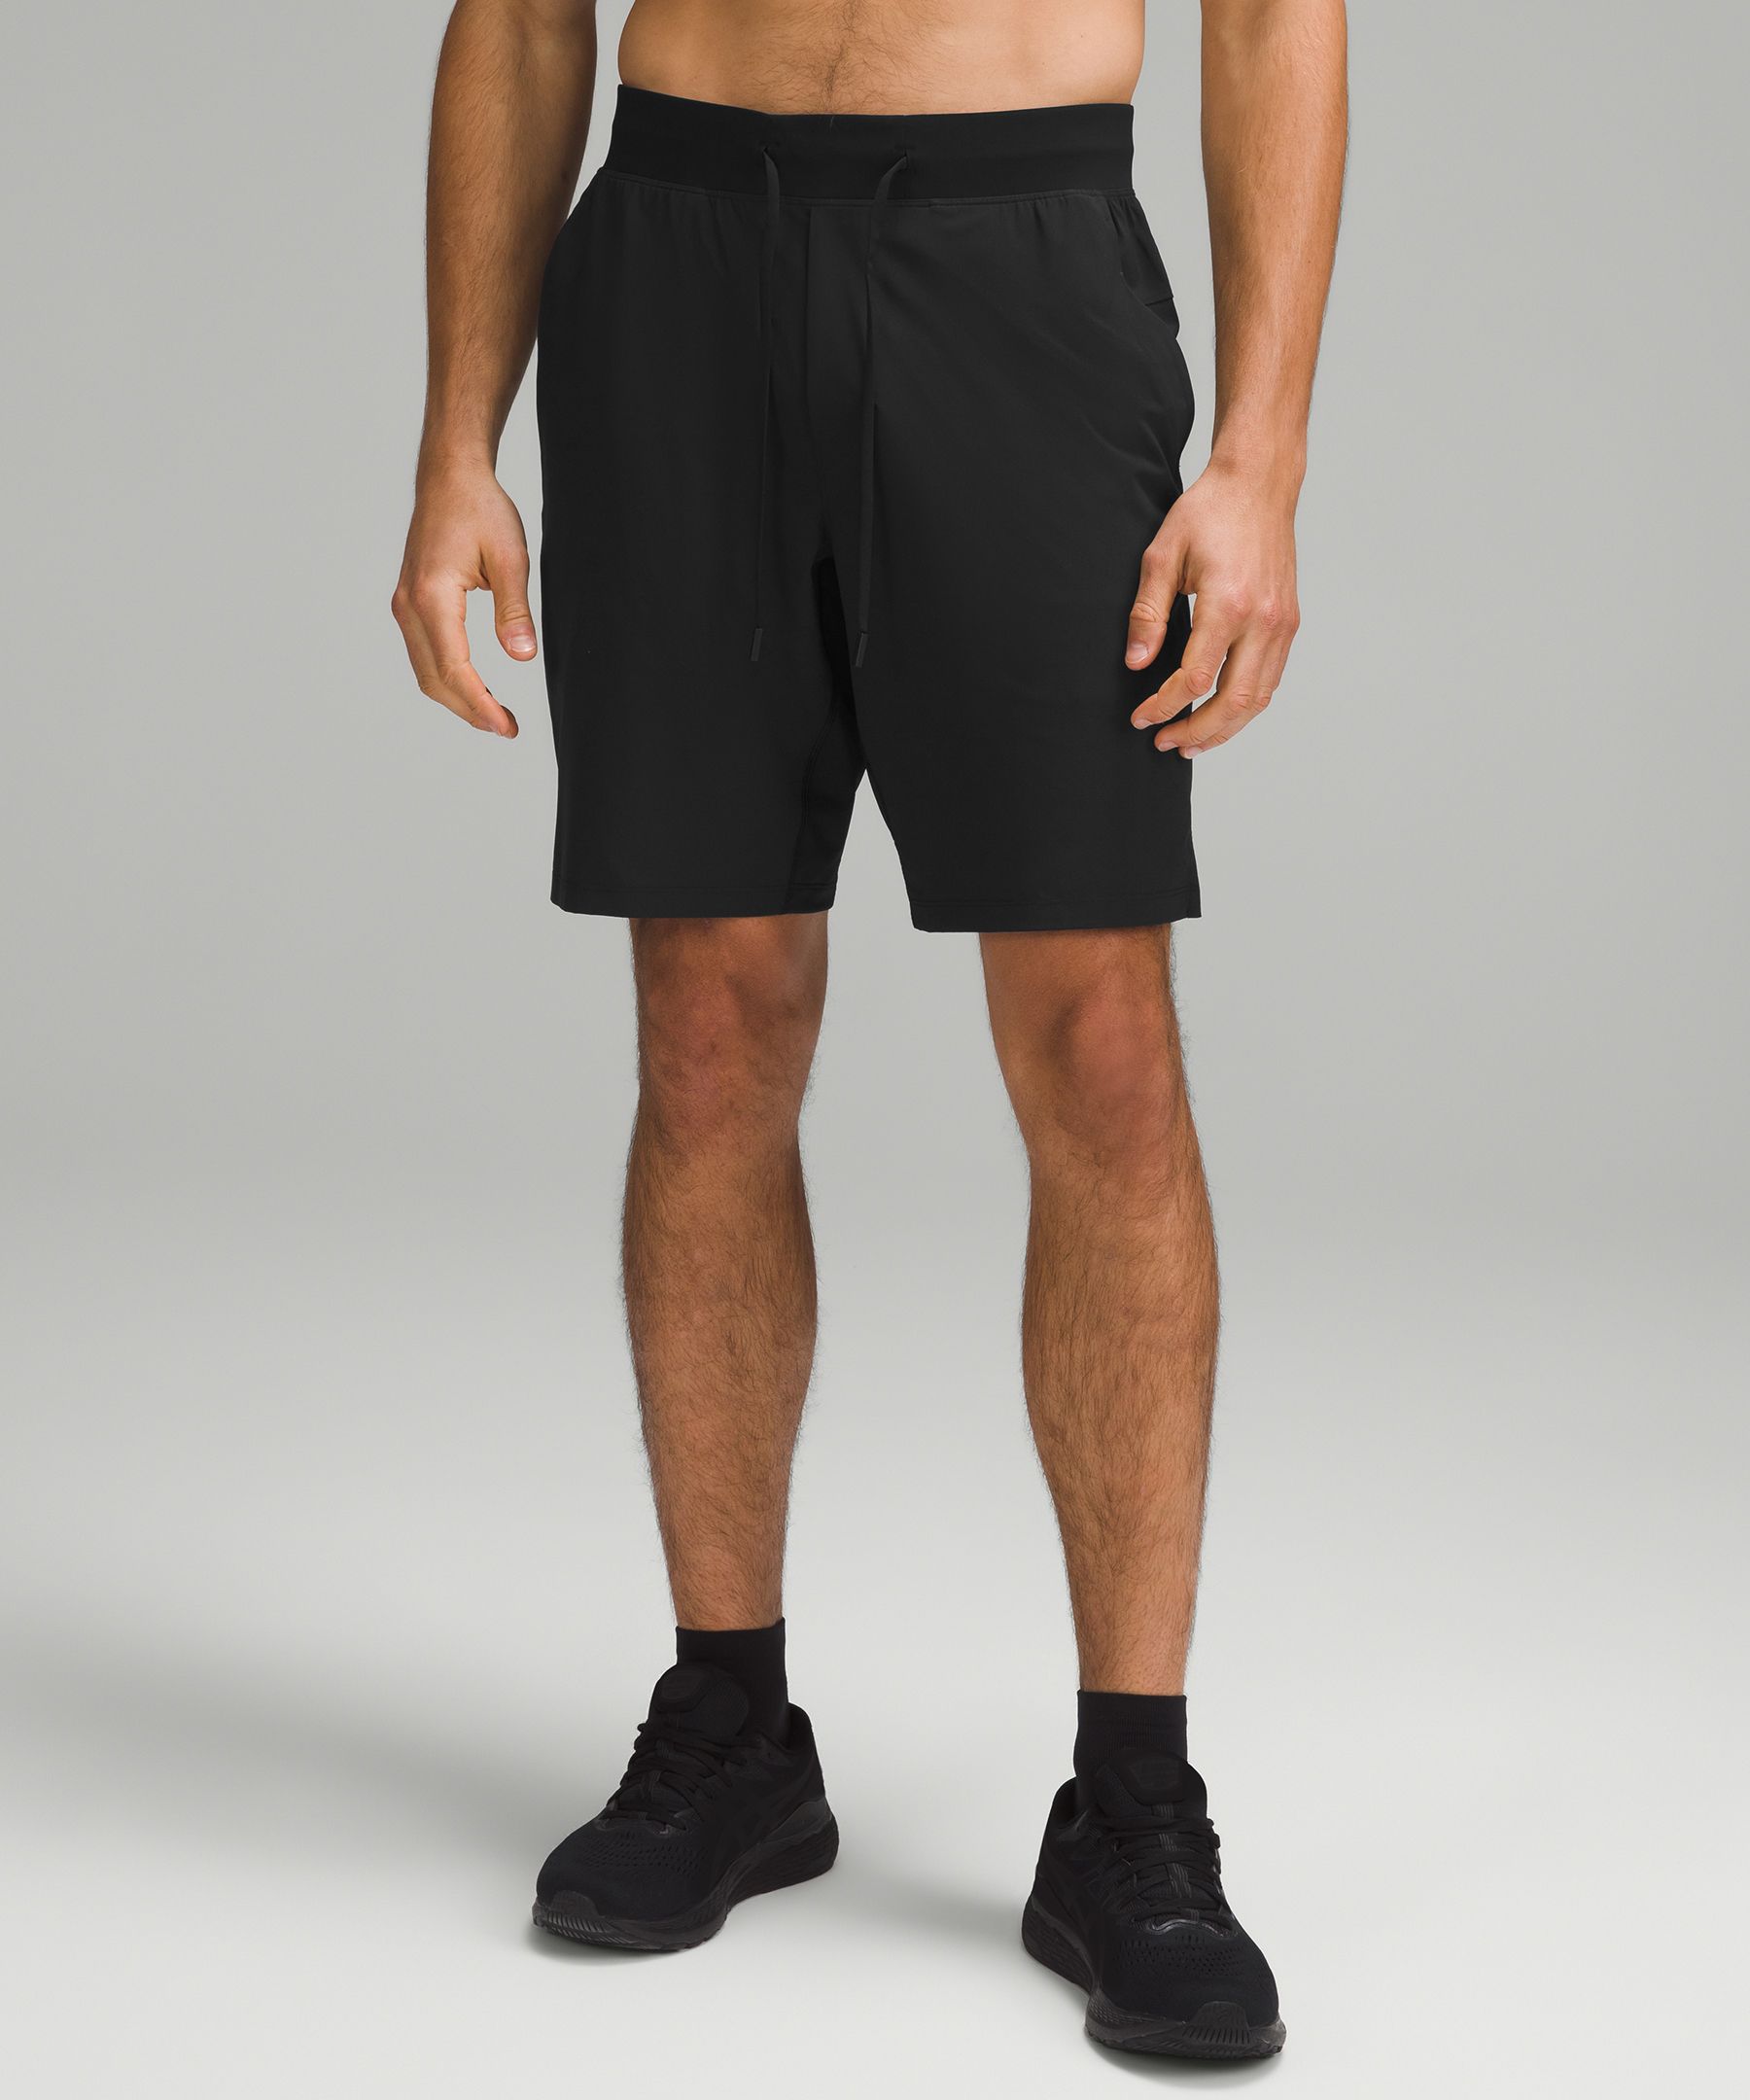 lululemon mens athletic shorts